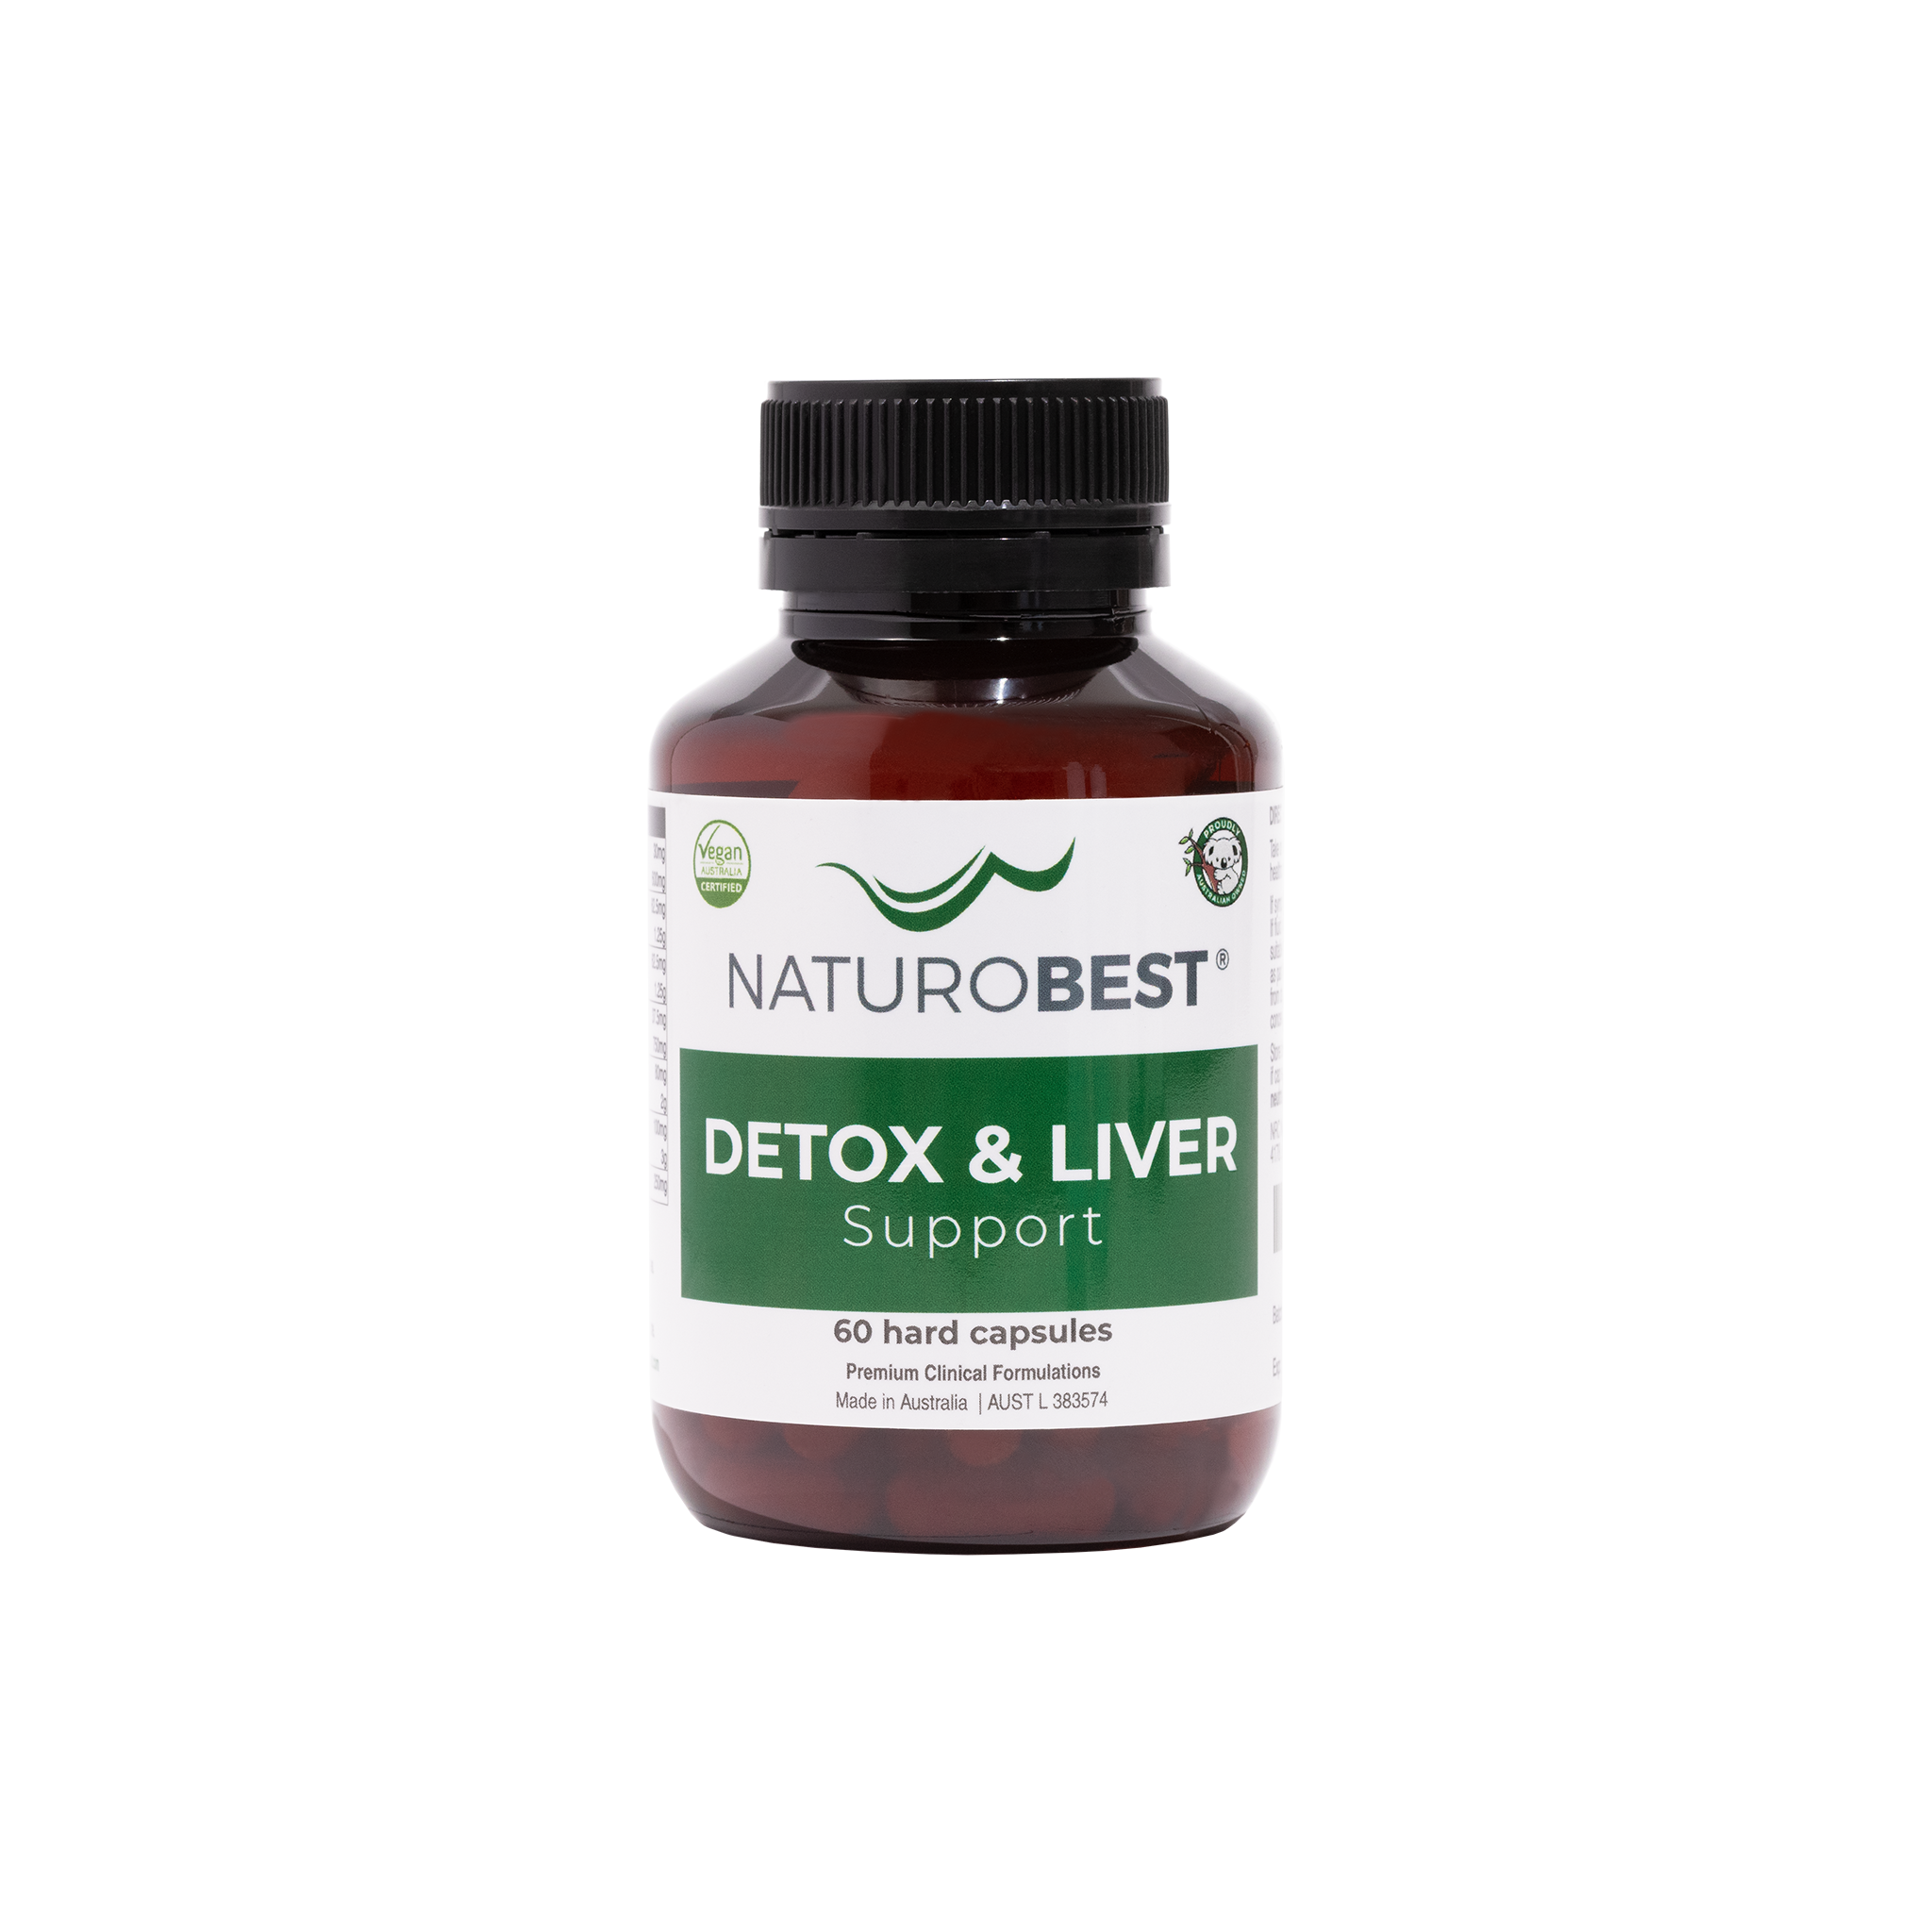 Detox & Liver Support - Carton